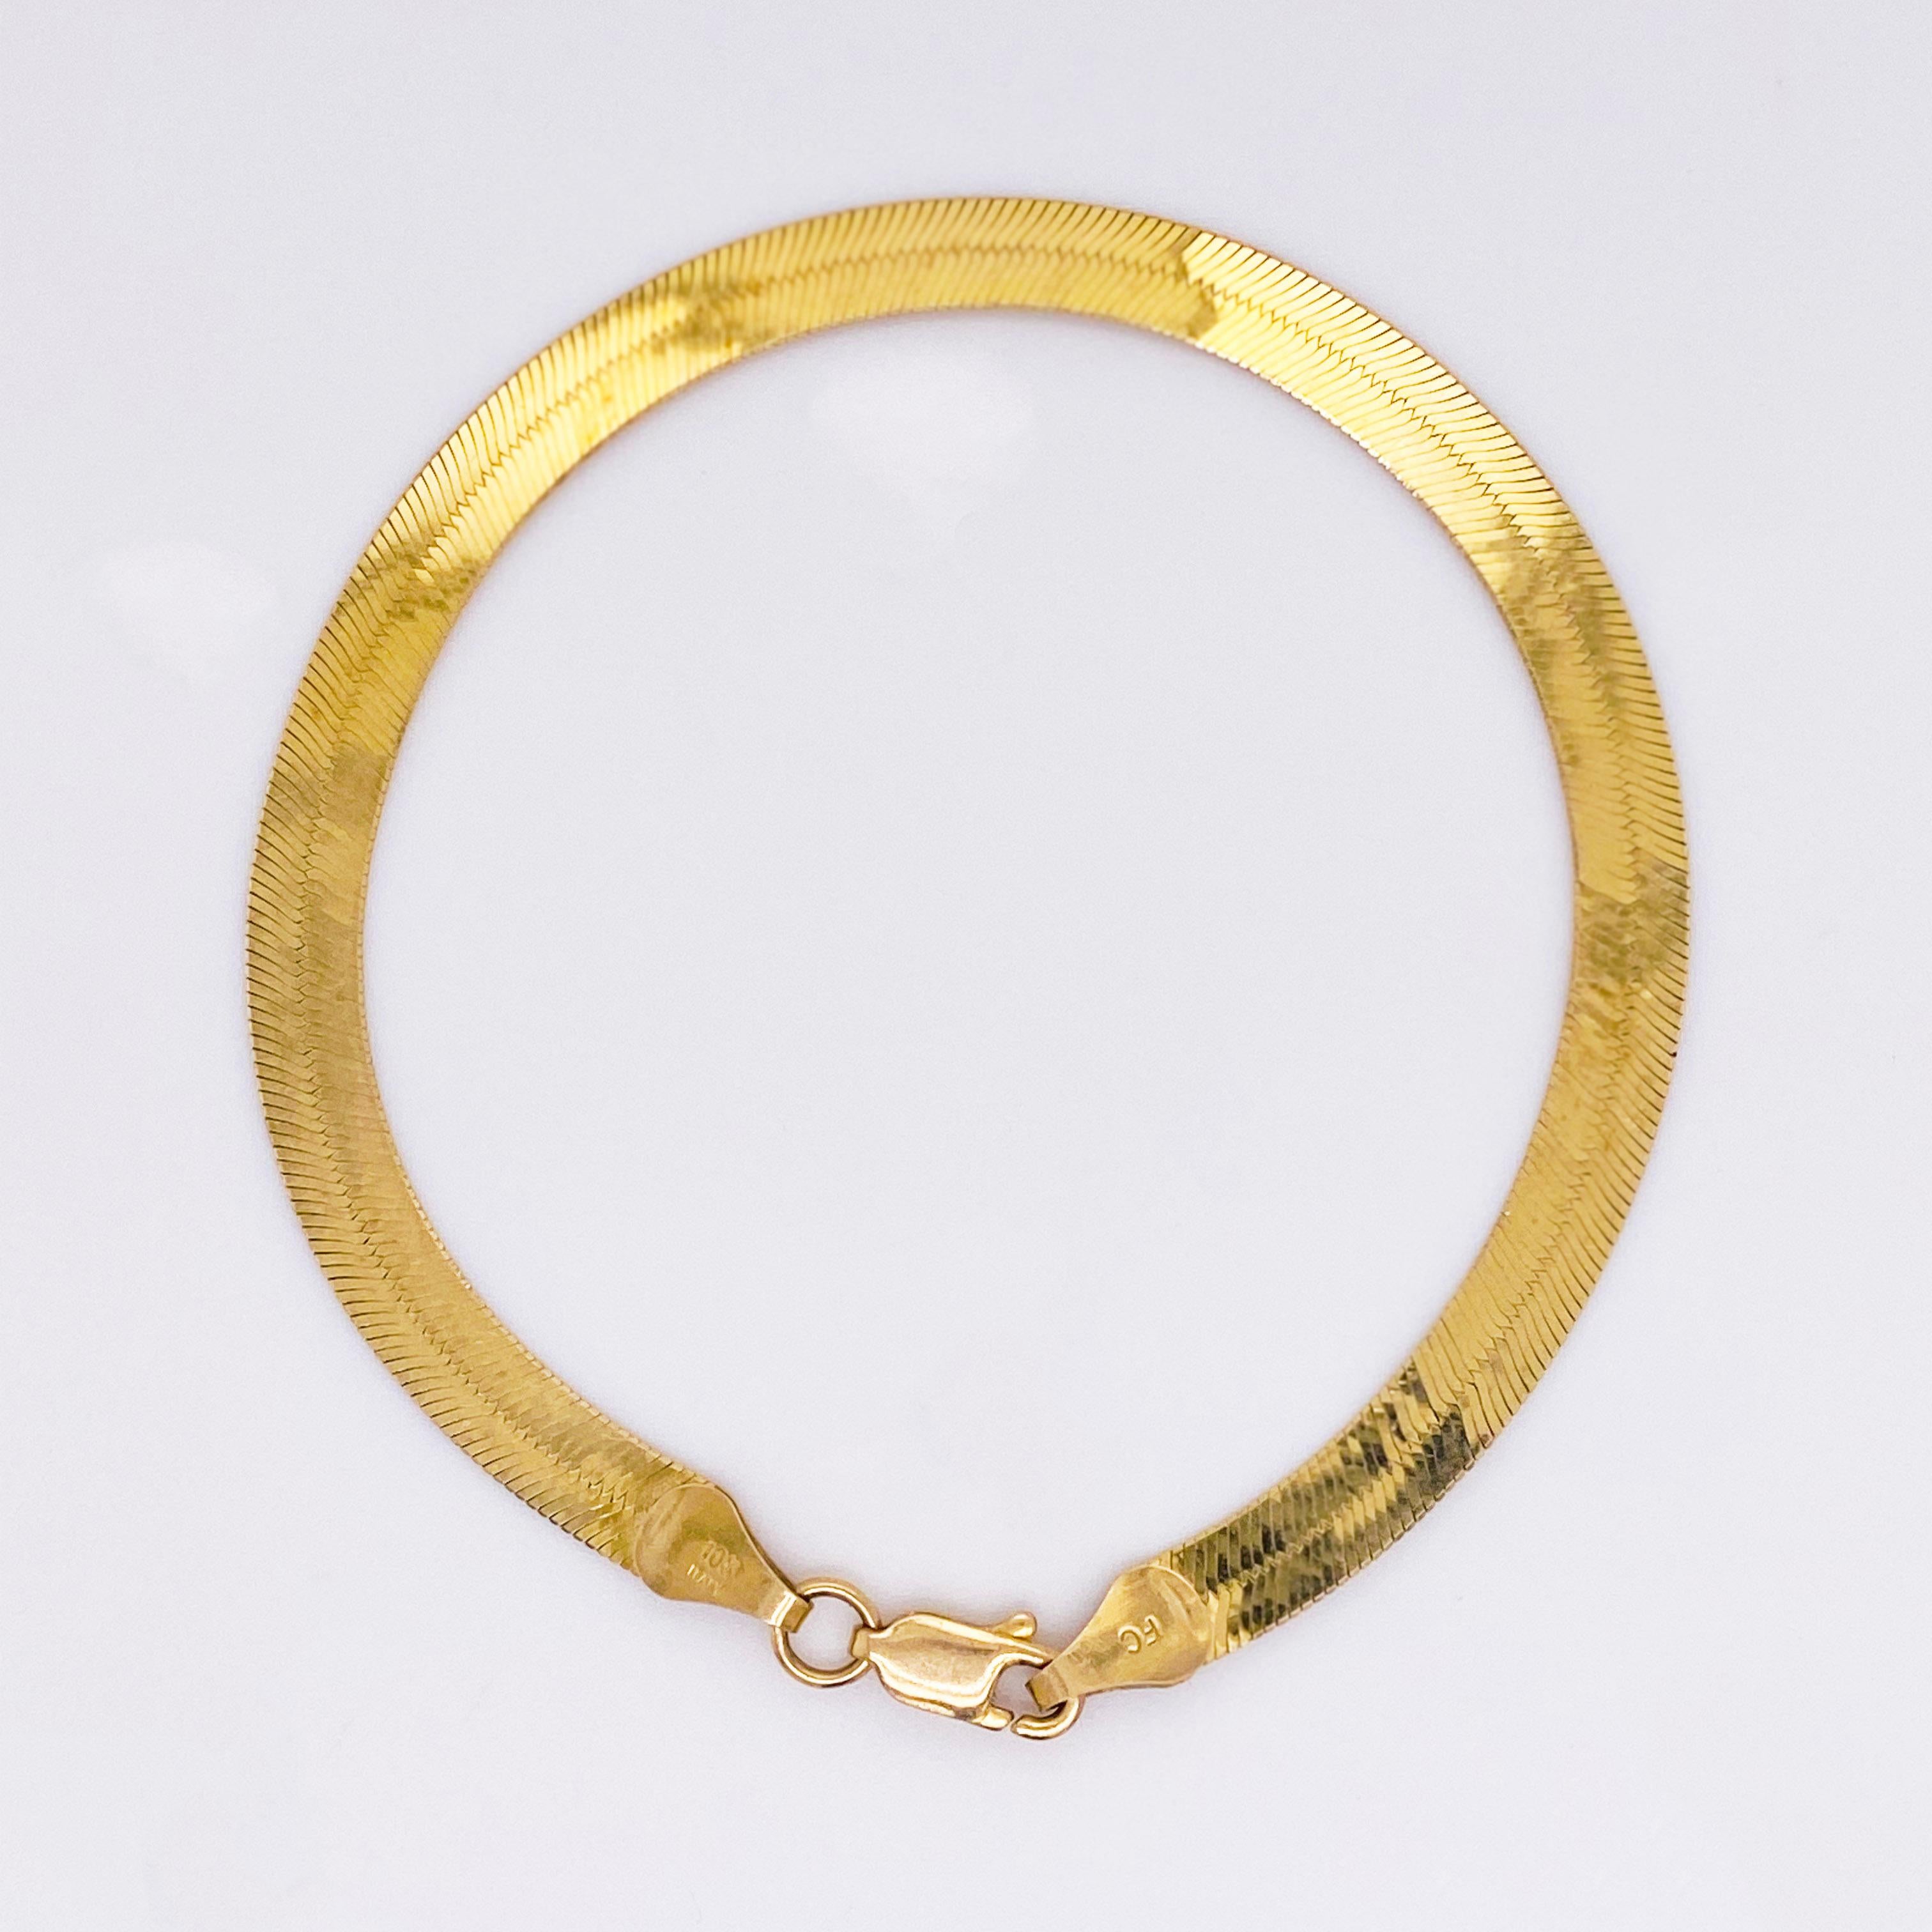 gold herringbone bracelet made in italy